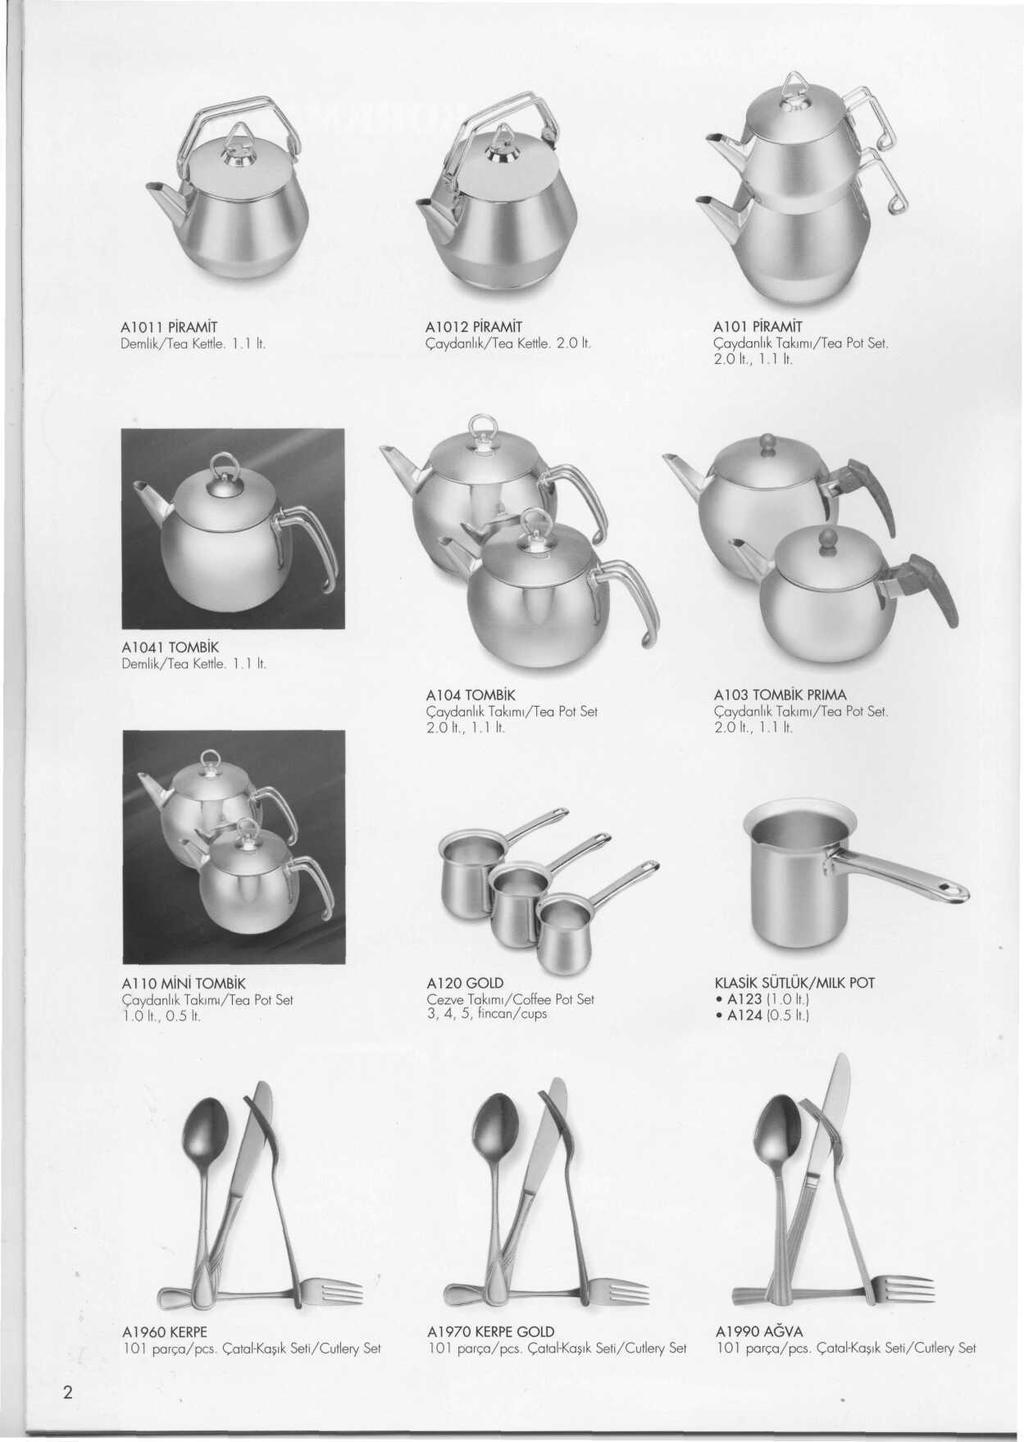 А1011 PiRAMIT Demlik/Tea Kettle. 1.1 It. Al 012 PIRAMIT Caydanlik/Tea Kettle. 2.0 A101 PiRAMiT Caydanlik Takimi/Tea Pot Set. 2.0 It., 1.1 It. A1041 TOMBIK Demlik/Tea Kettle. 1.1 It. A104TOMBiK Caydanlik Takimi/Tea Pot Set 2.